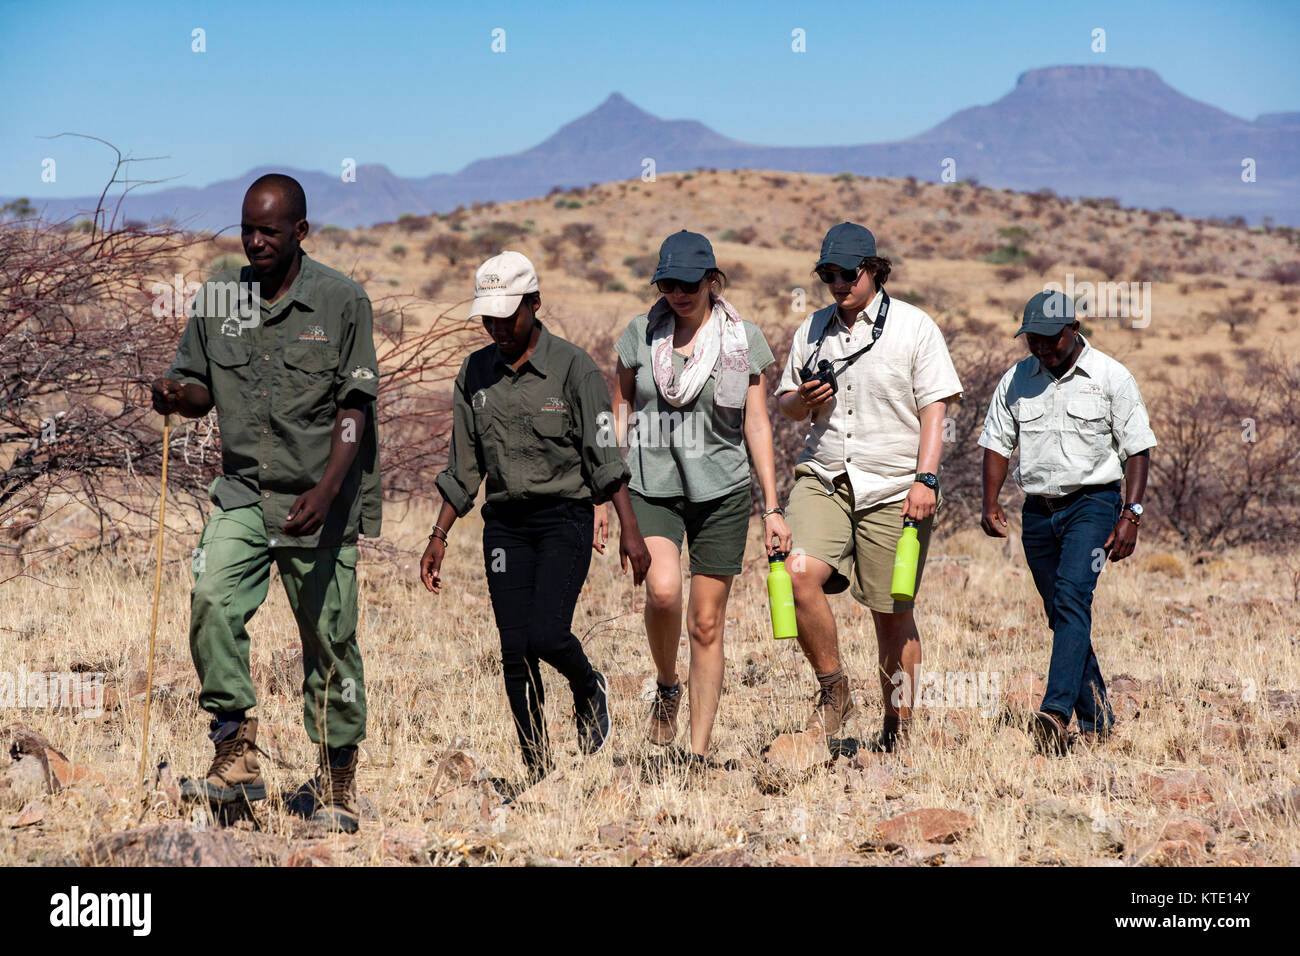 Groupe de personnes à l'Huab trekking rhinocéros sous toile, Damaraland, Namibie, Afrique Banque D'Images